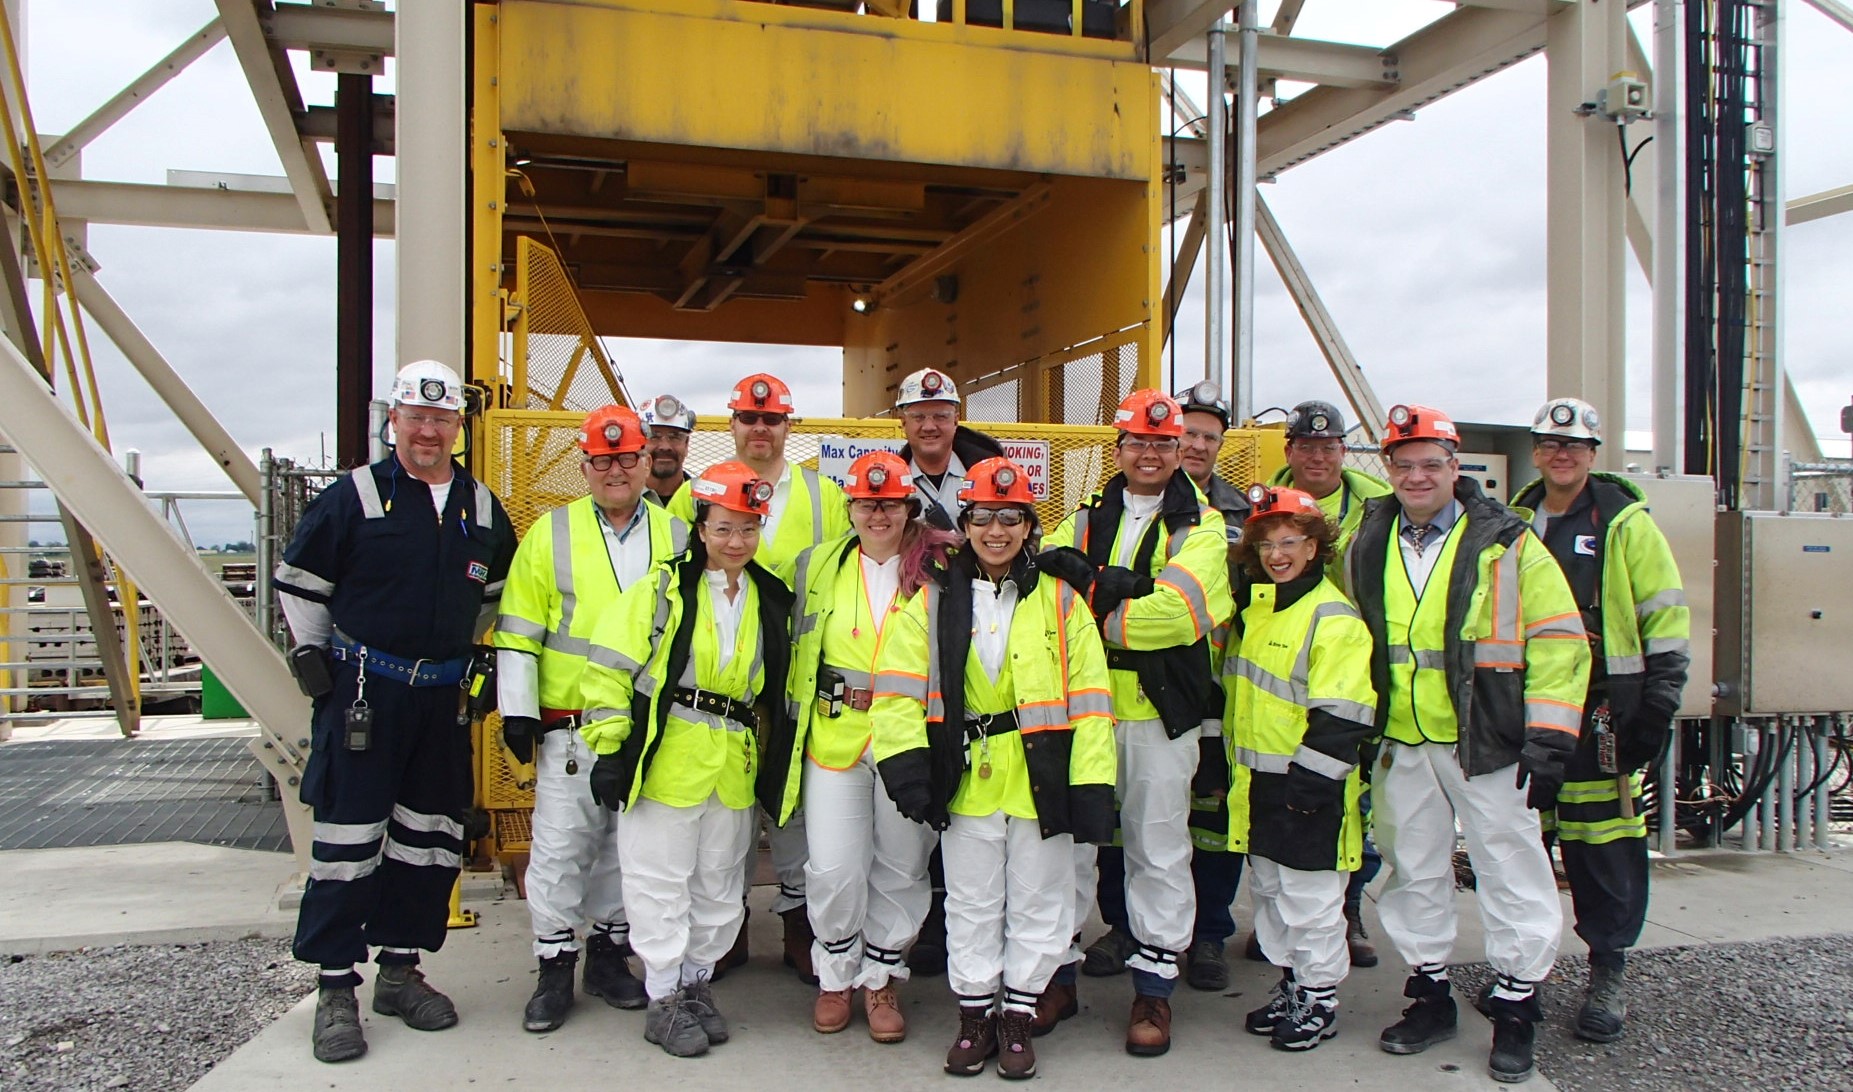 ERC trainees tour a coal mine